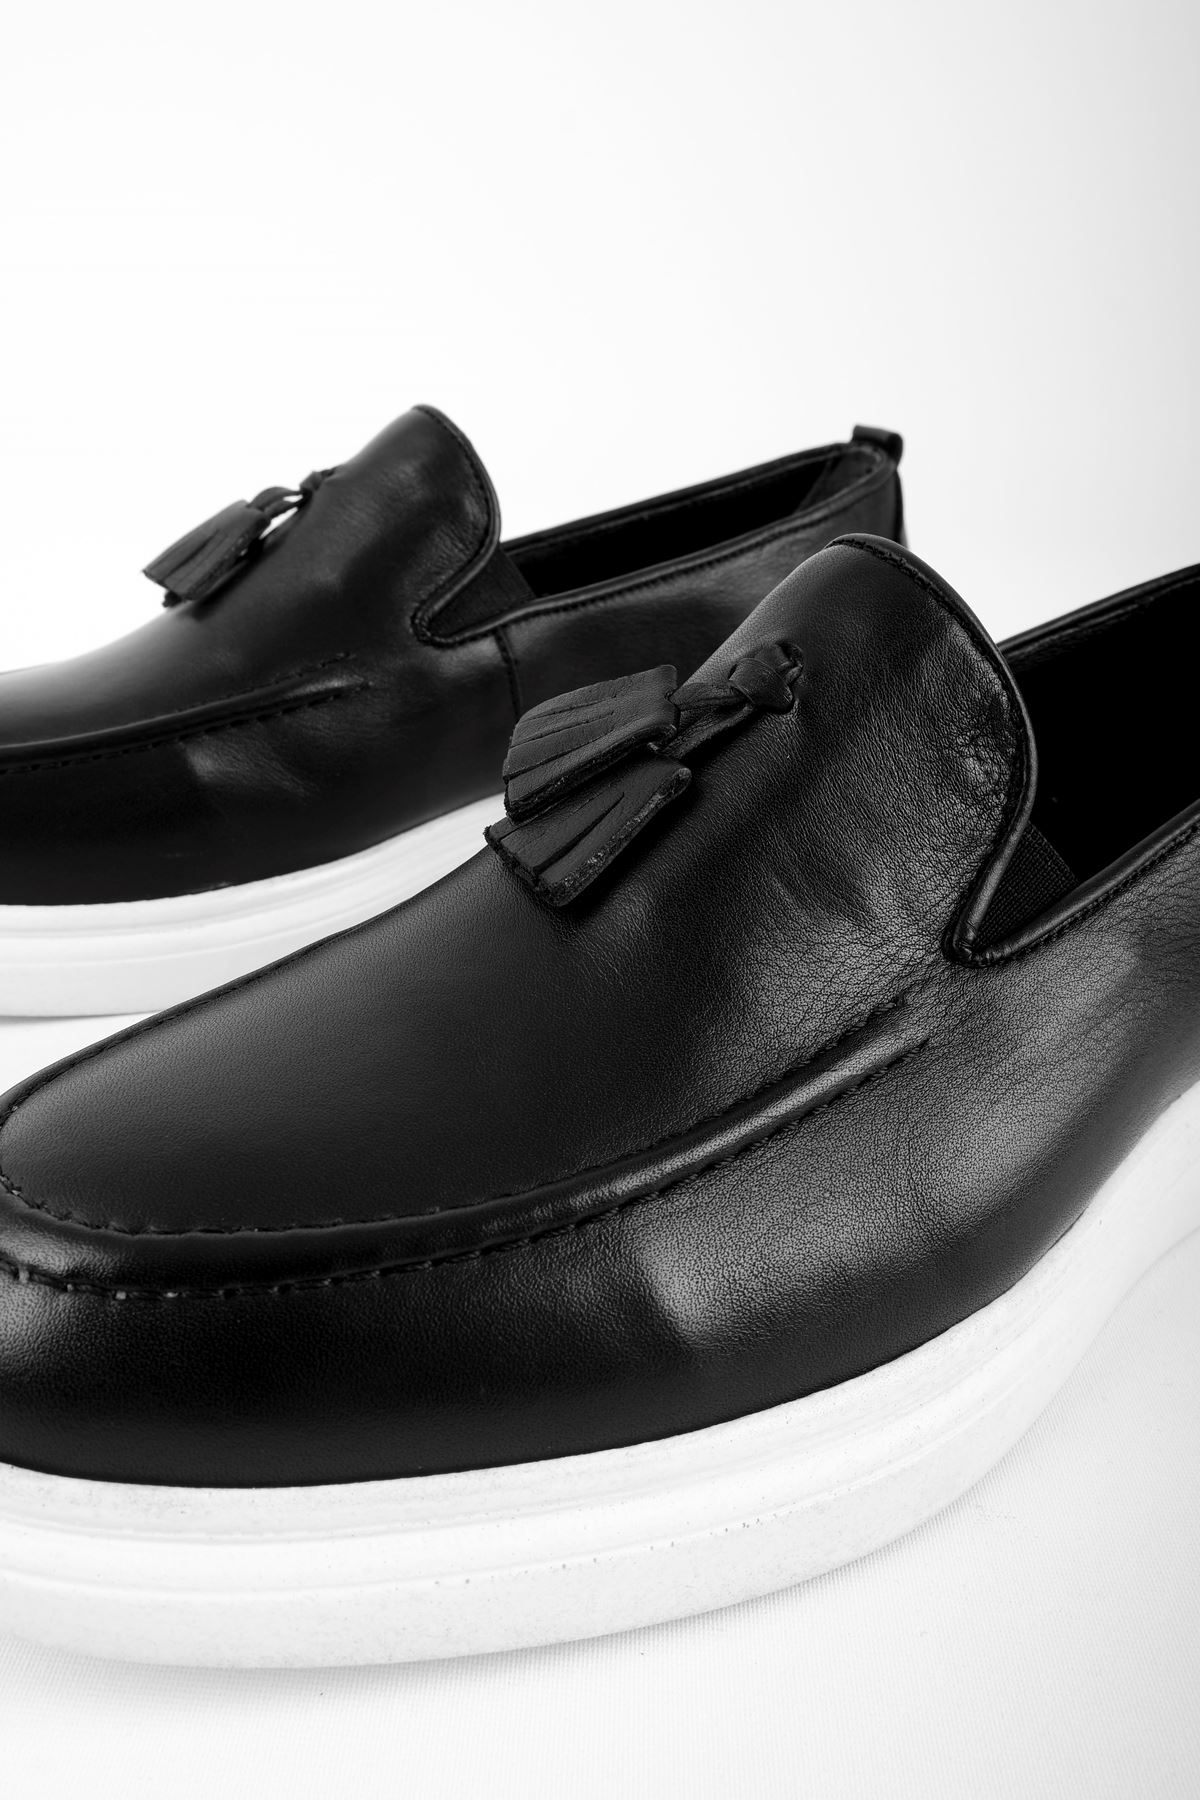 Jewel Hakiki Deri Erkek Ayakkabı-siyah